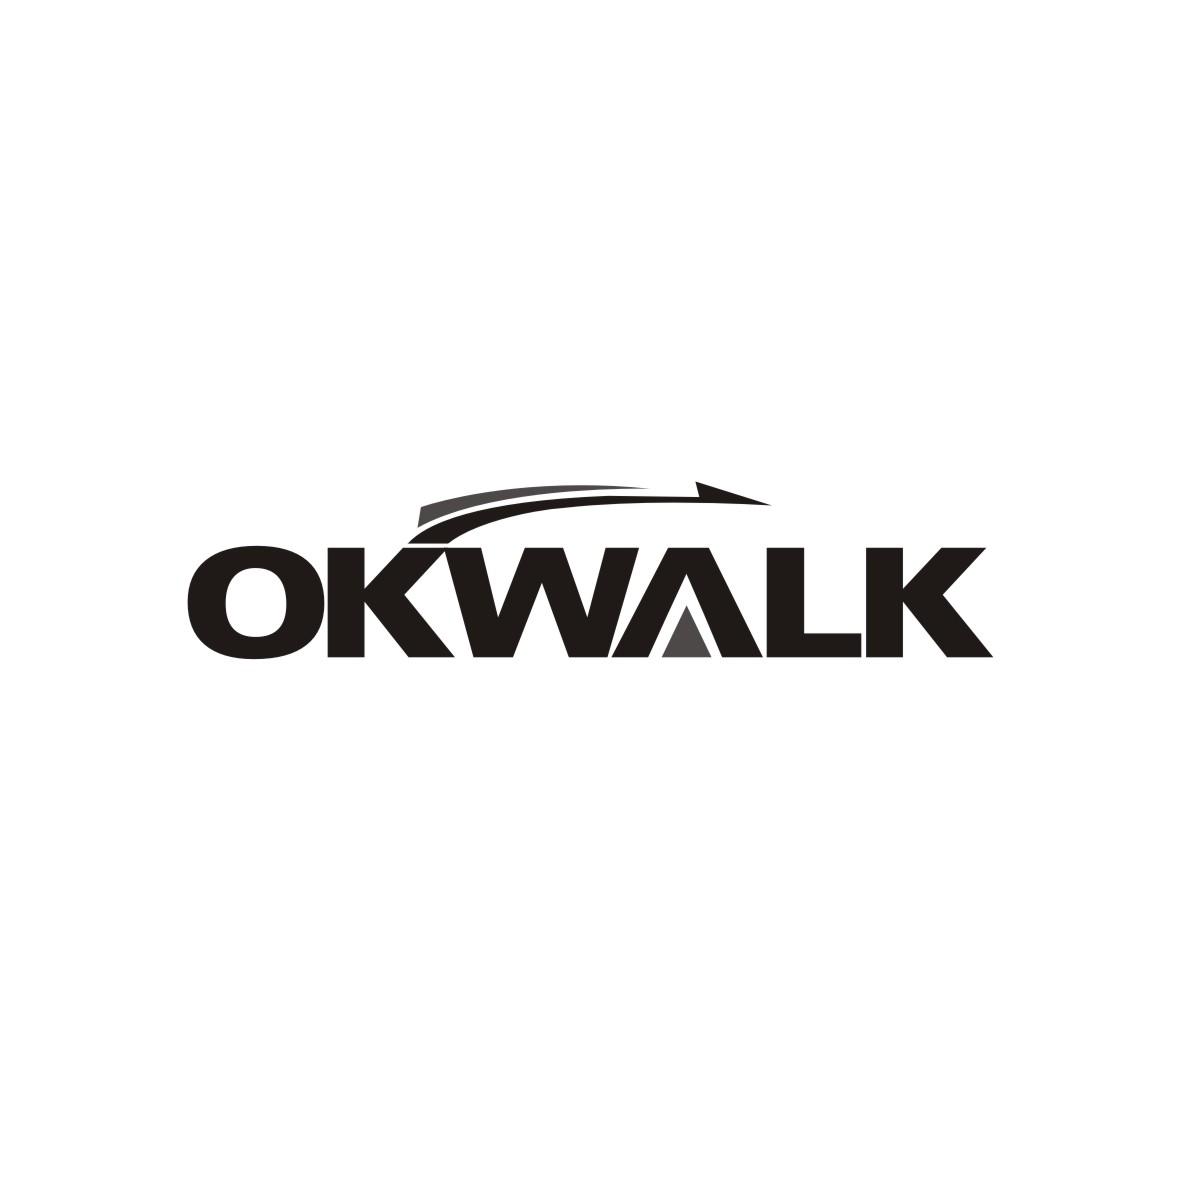 OKWALK